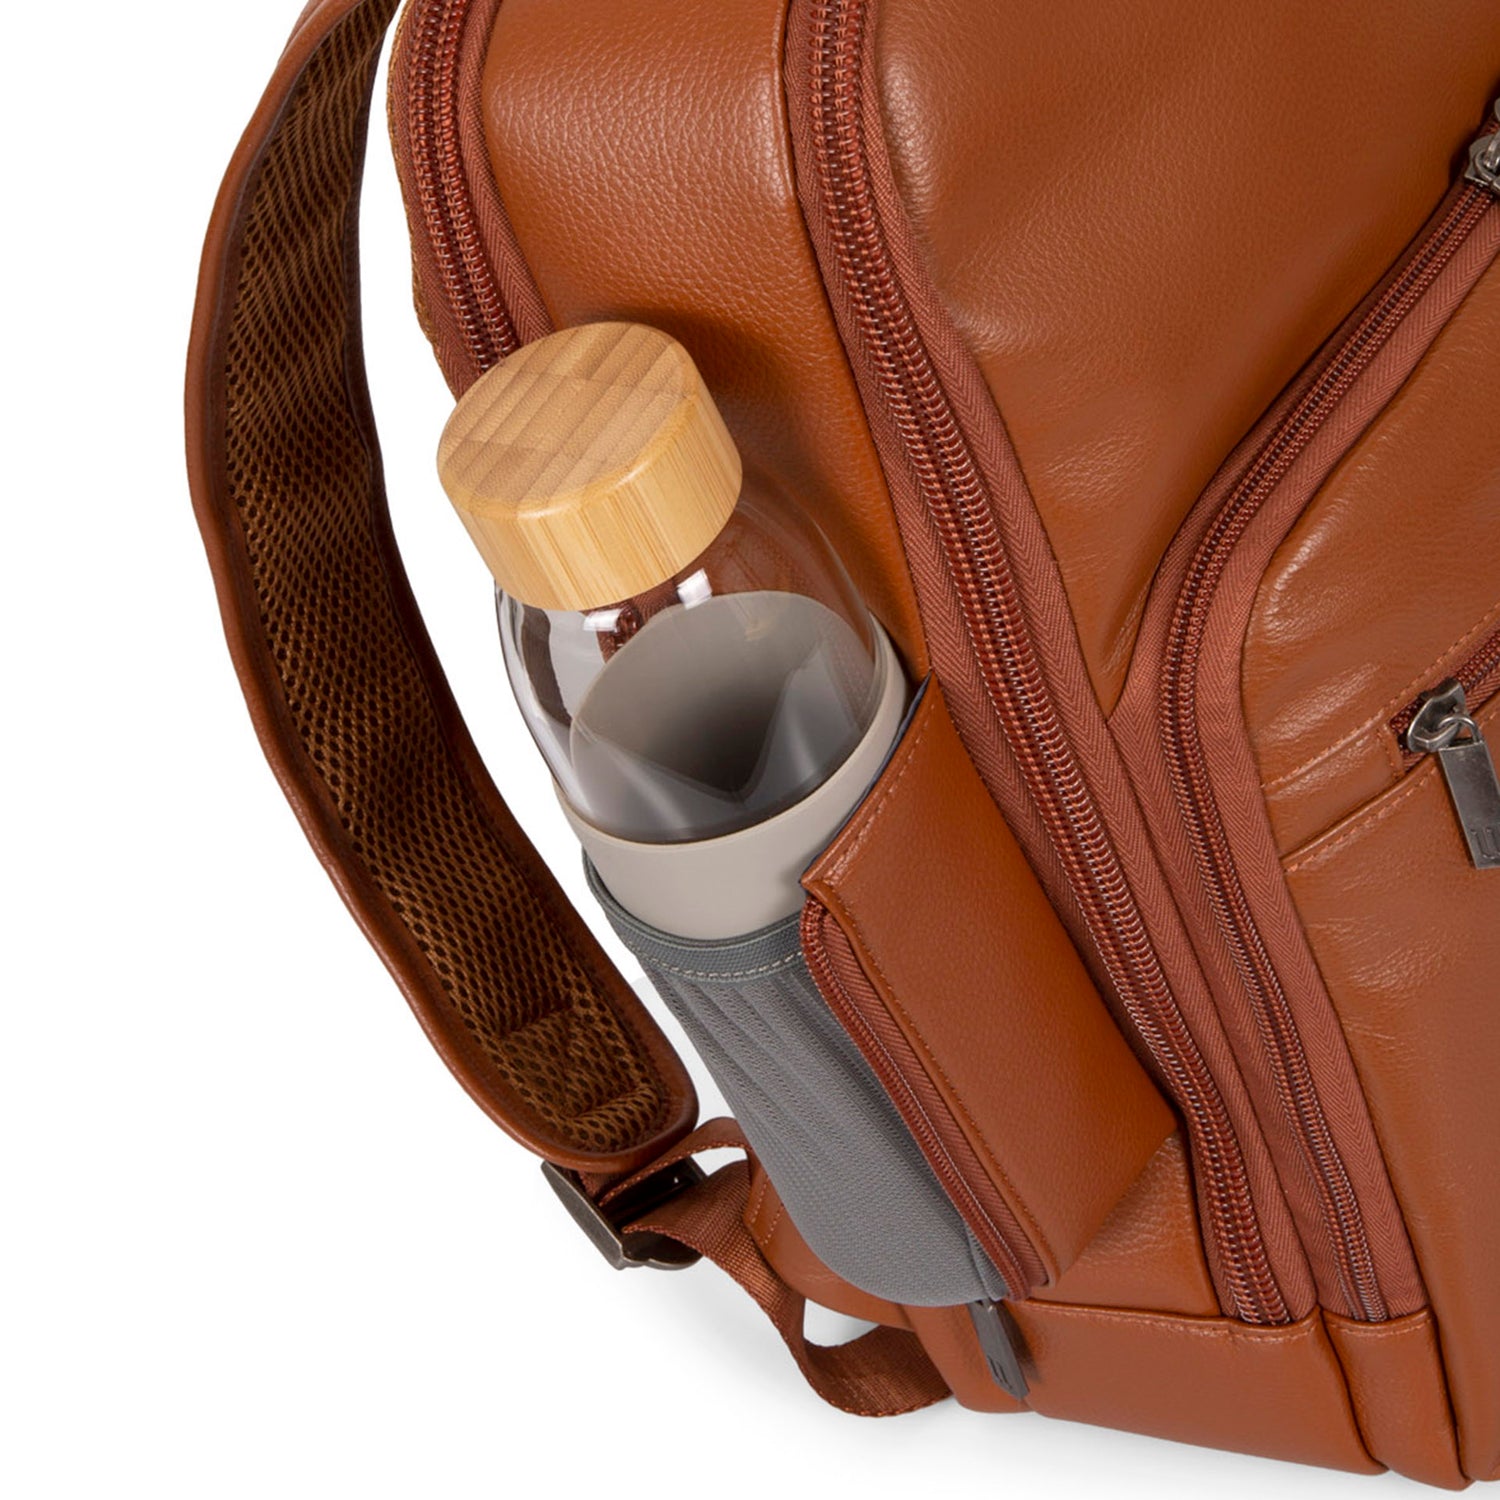 Colwood RFID Multi-Pocket Backpack - Bentley